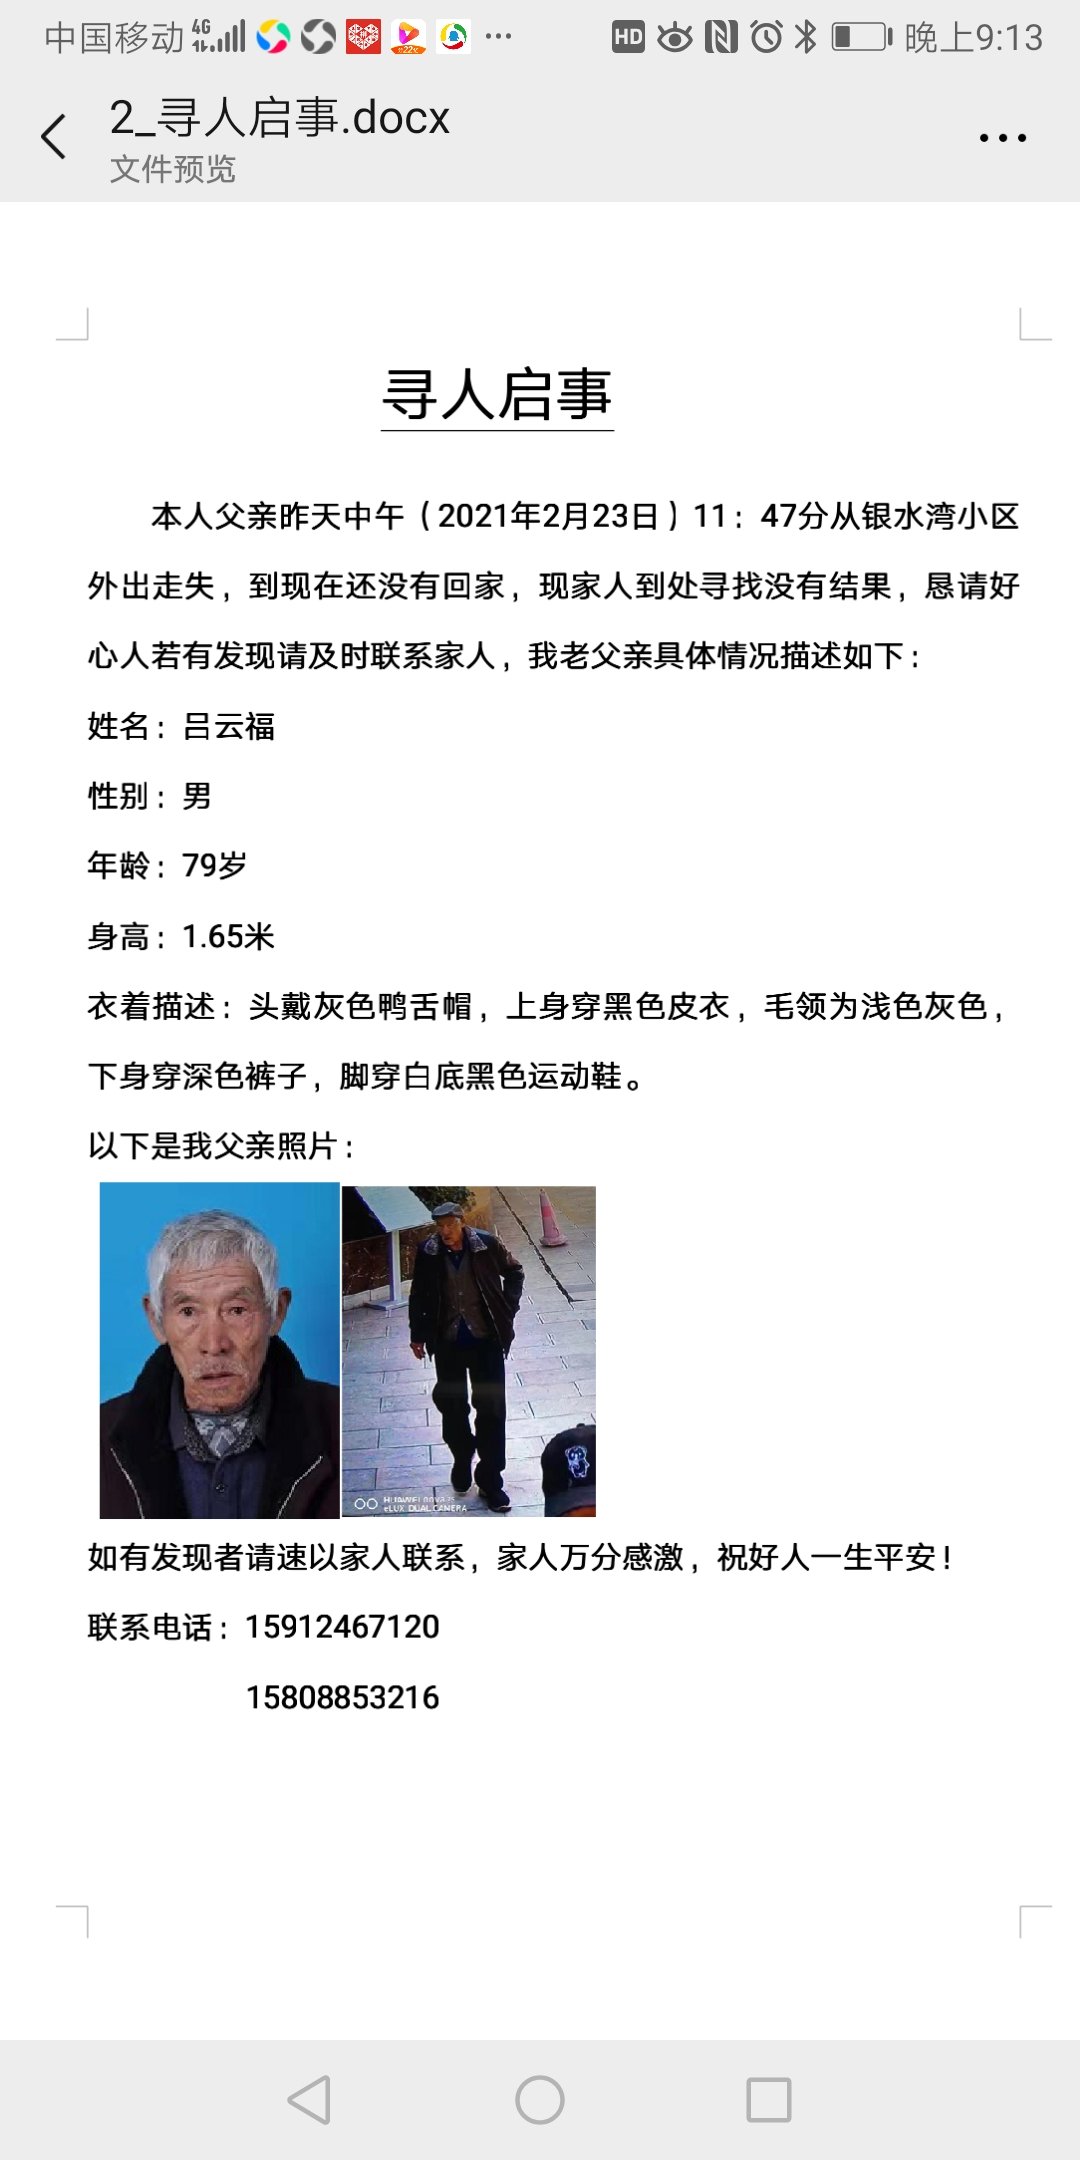 我父亲于2月23号走失，现无信息，恳求帮忙转发一下 - 吕云福